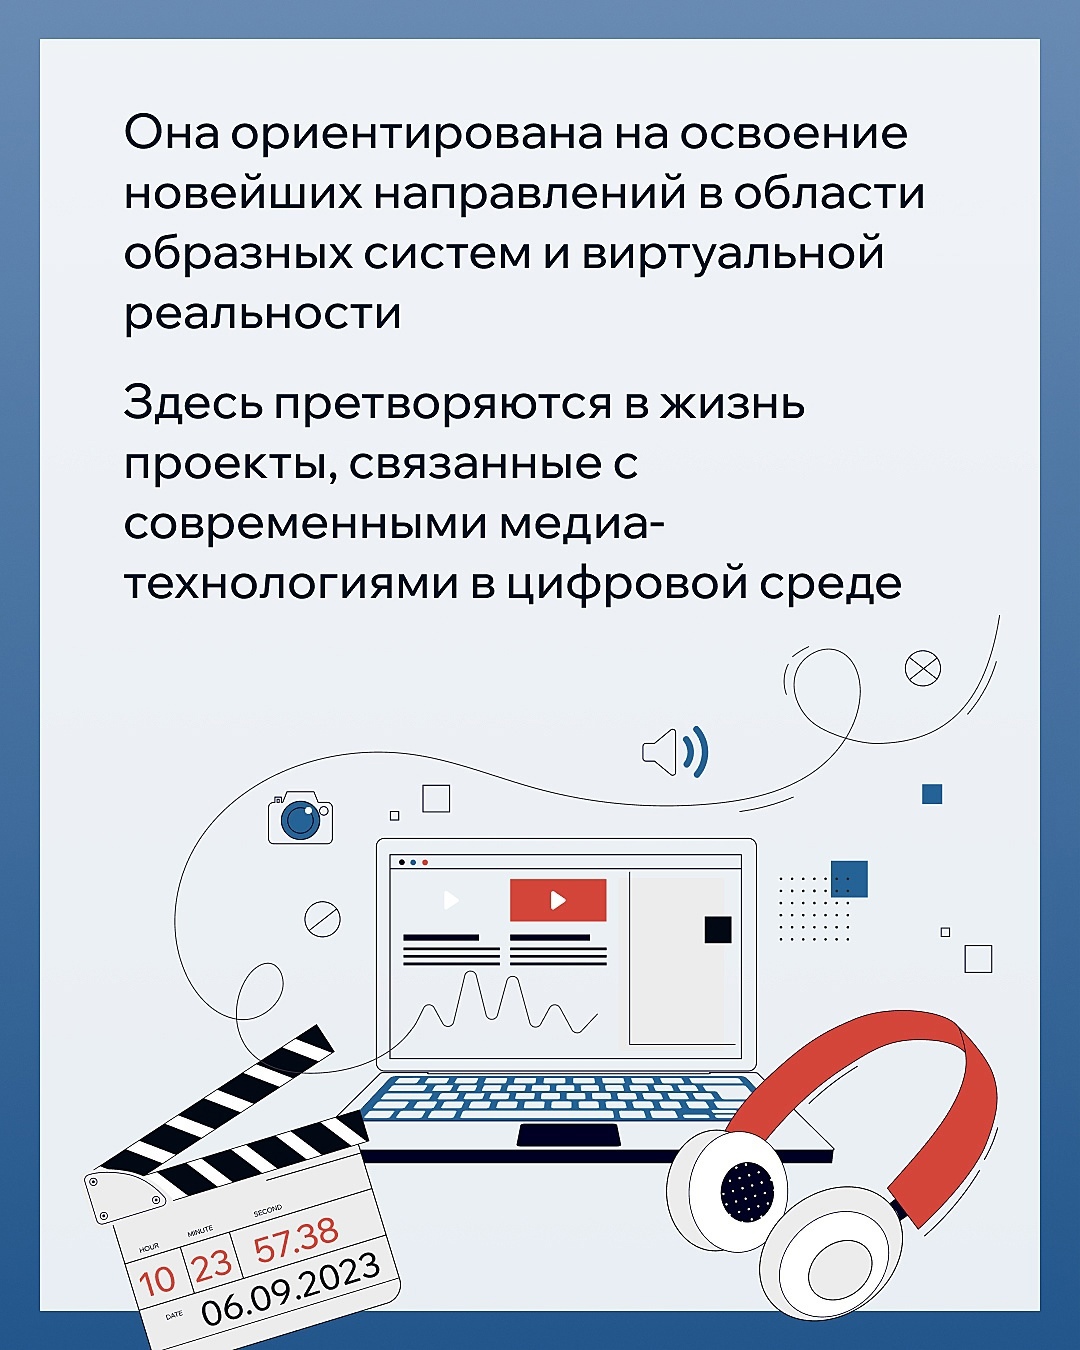 В Межвузовском студенческом кампусе будет размещена лаборатория «Медиадизайн и мультихудожественные цифровые технологии»